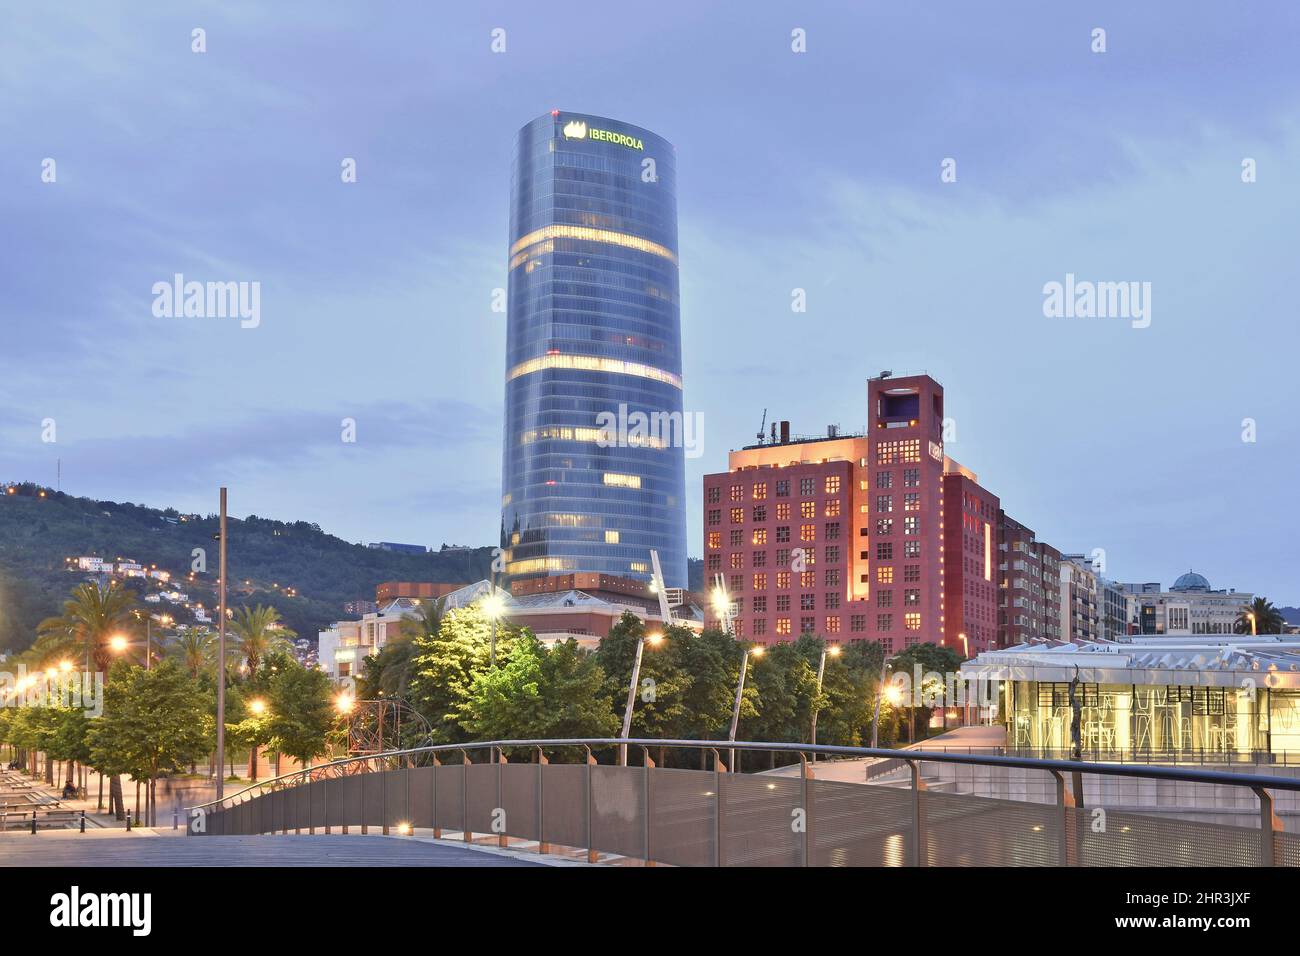 Iberdrola Tower - modernes Büro Wolkenkratzer und Hotel Melia in der Abenddämmerung, Bilbao Spanien Europa. Stockfoto